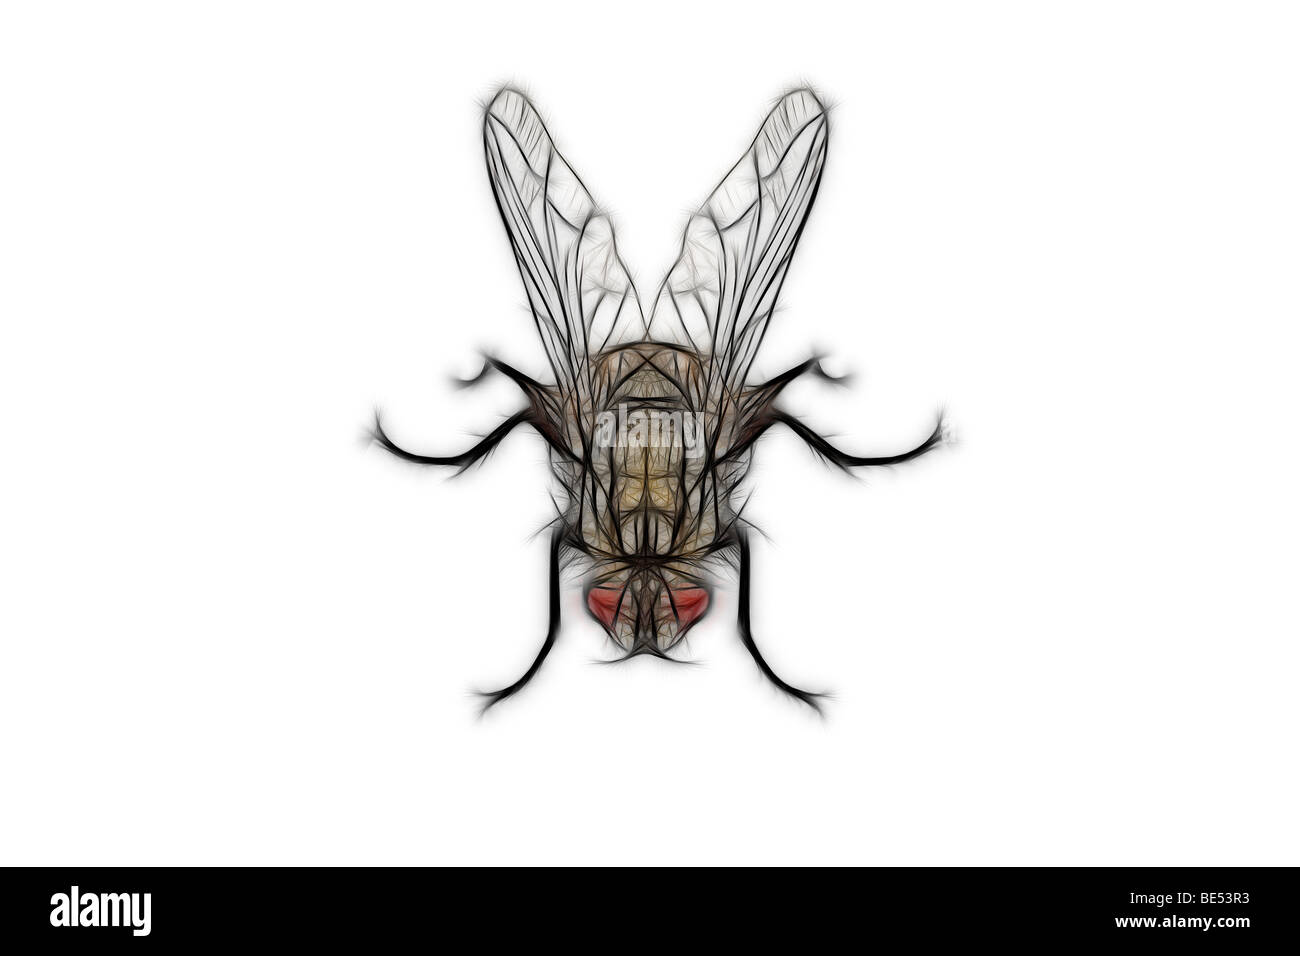 Eine Digital illustrierte Fliege auf einem weißen Hintergrund. Dessin Assisté Par Ordinateur d ' une Mouche Sur fond Blanc. Stockfoto